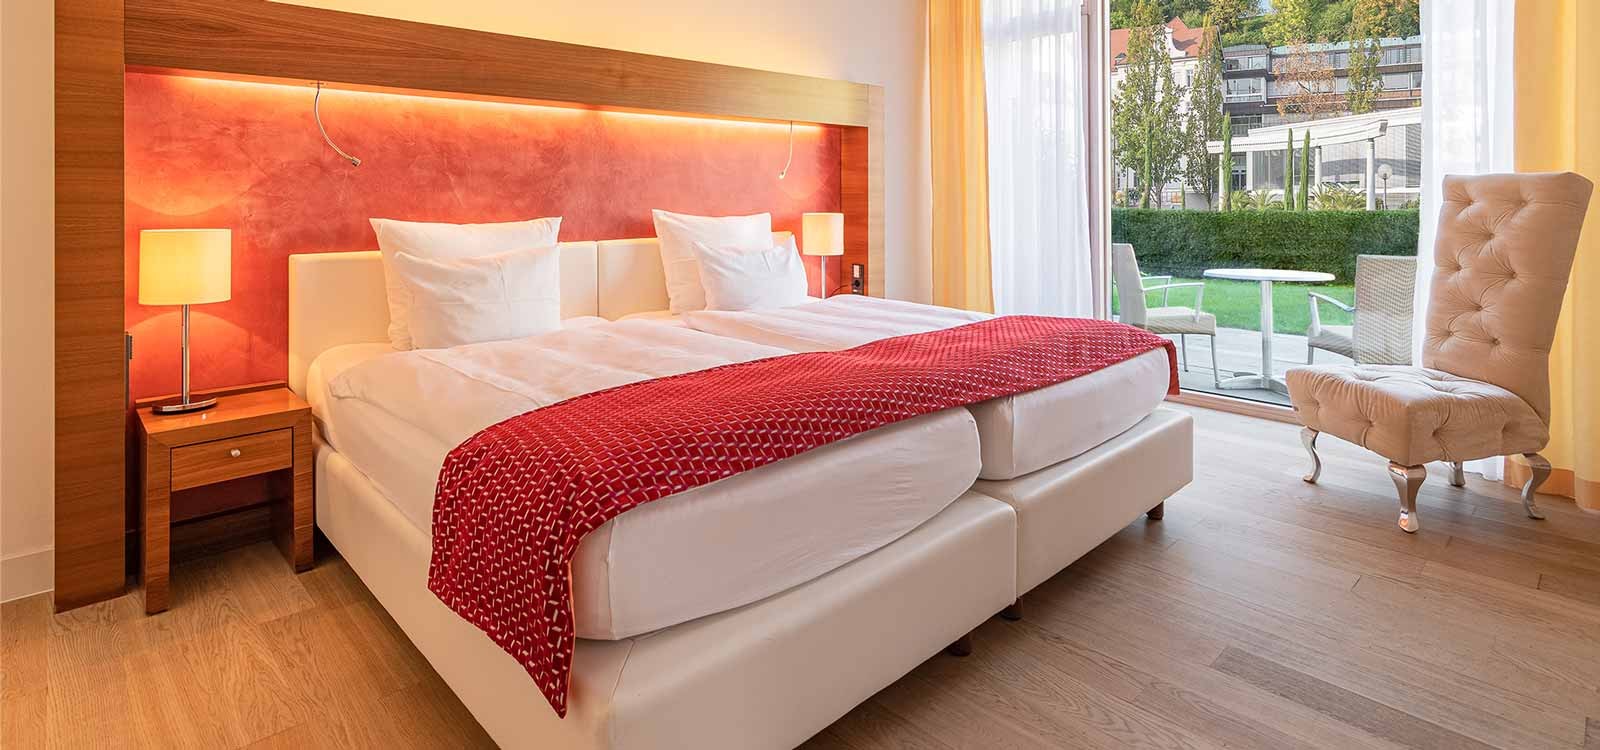 Aufnahme eines großen gemütlichen Bettes einer Suite mit Gartenzugang im 4-Sterne Hotel in Baden-Baden